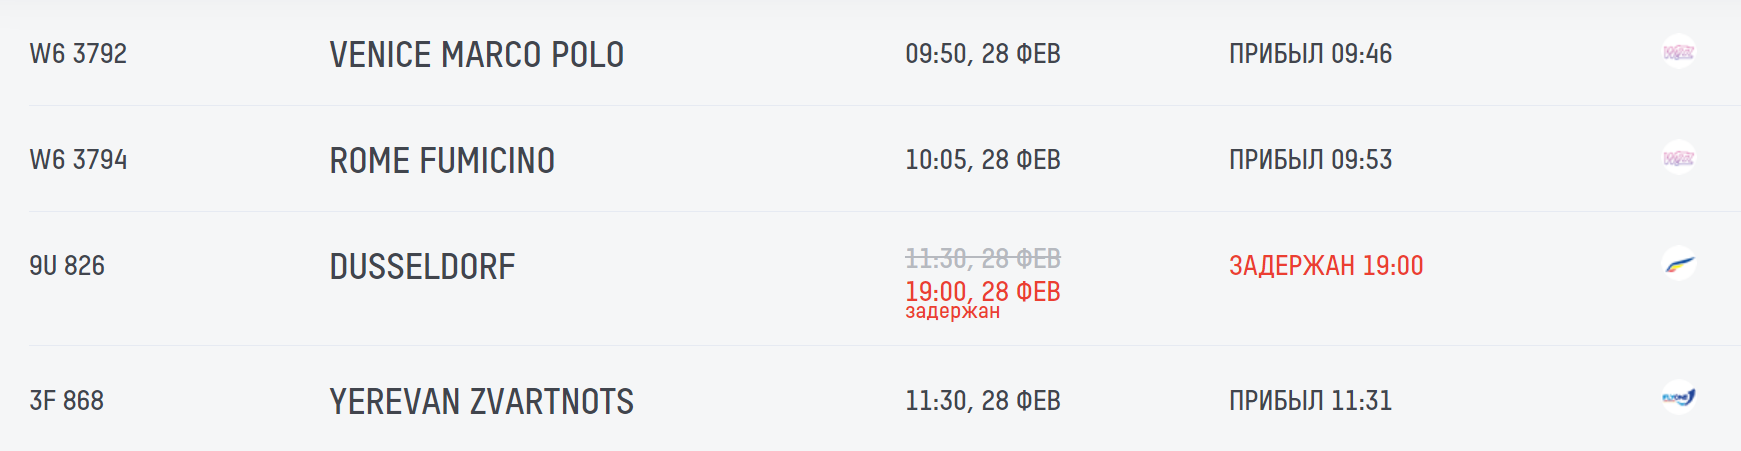 AirMoldova отменила два рейса в Стамбул. Что случилось?